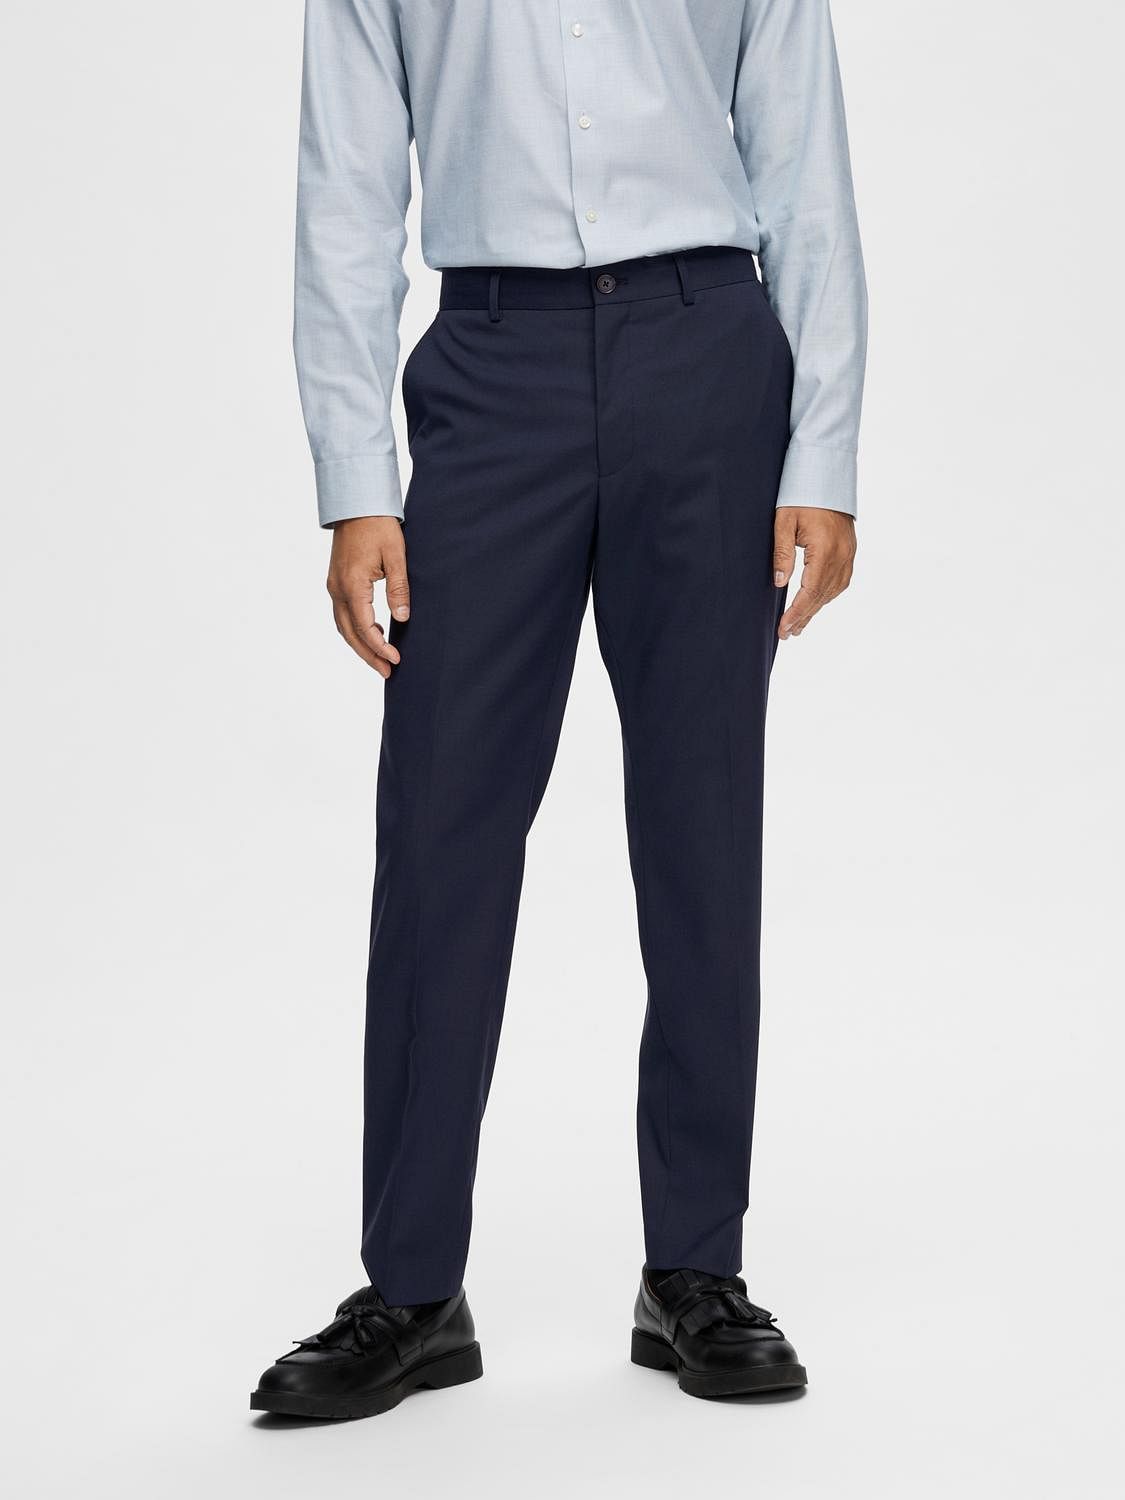 Slim Fit Smart Casual Men's Suit Suggestion